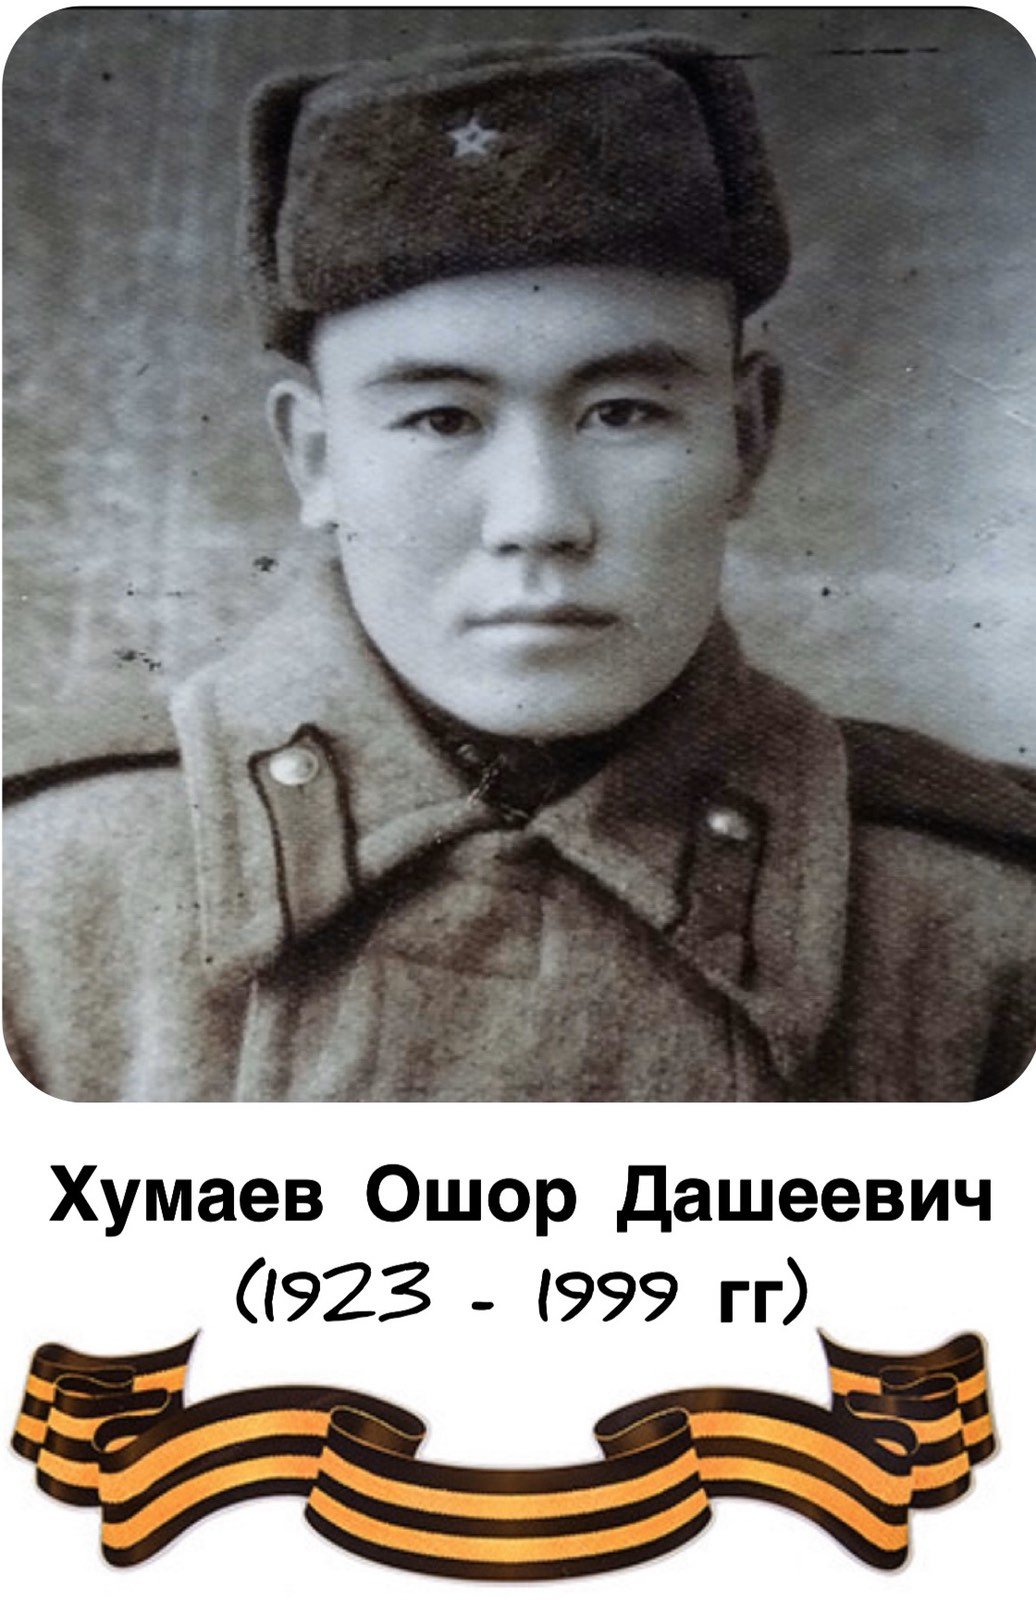 Бессмертный полк: Хумаев Ошор Дашеевич